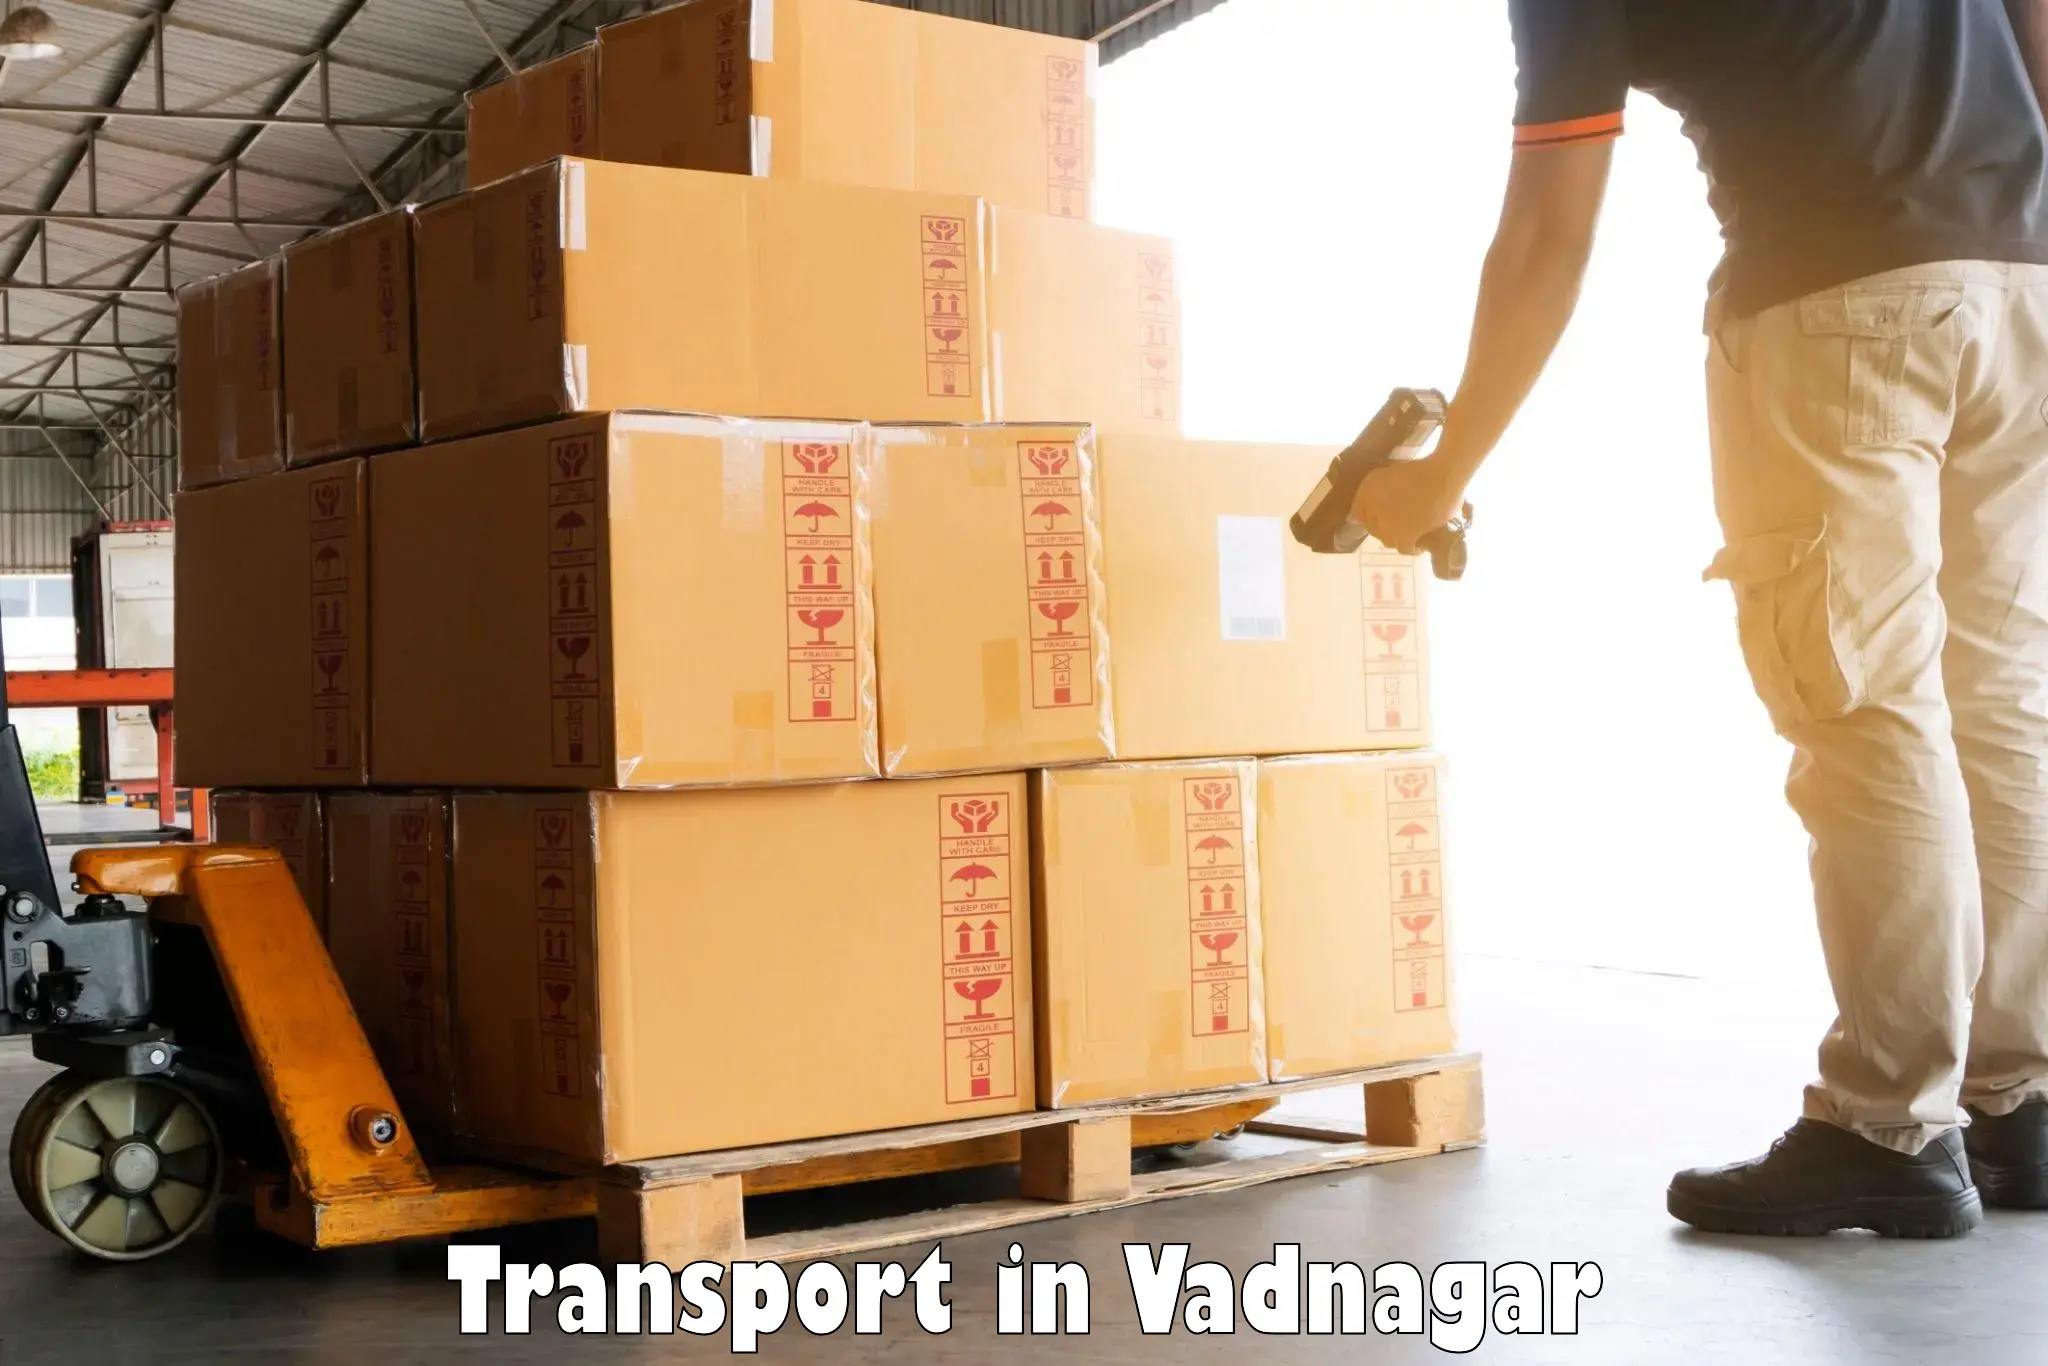 Transportation services in Vadnagar